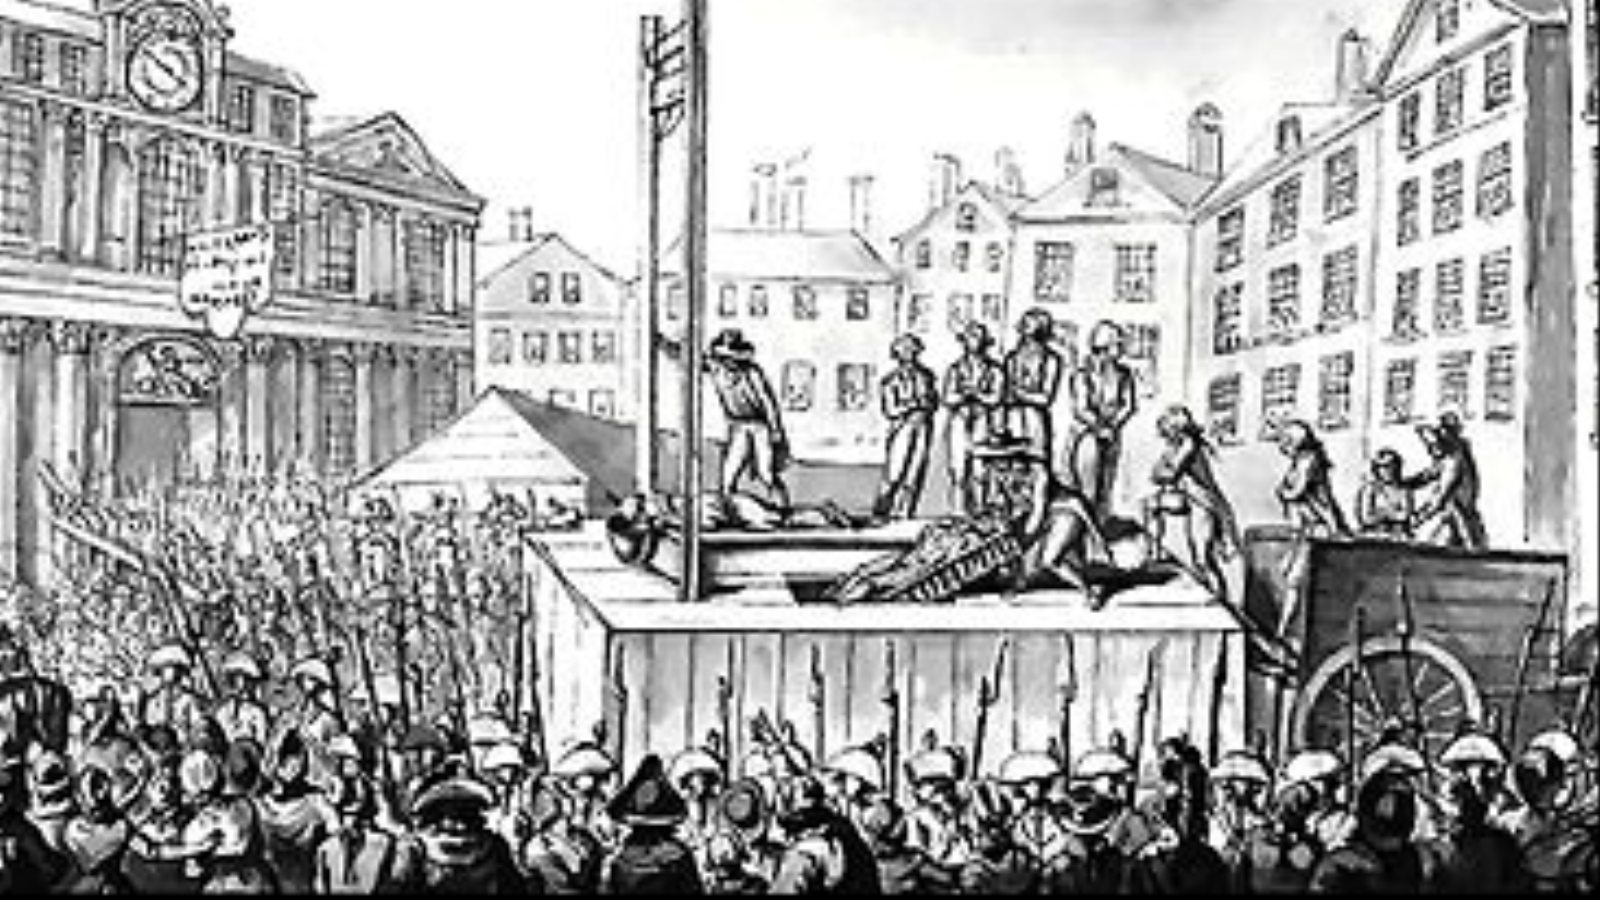 الإعدام بالمقصلة، المشهد المميز لفترة حكم الإرهاب في فرنسا (1793-1794)، حيث كانت تتم عمليات الإعدام أمام الجموع؛ ضماناً لتحقيق القدر الأكبر من الرهبة